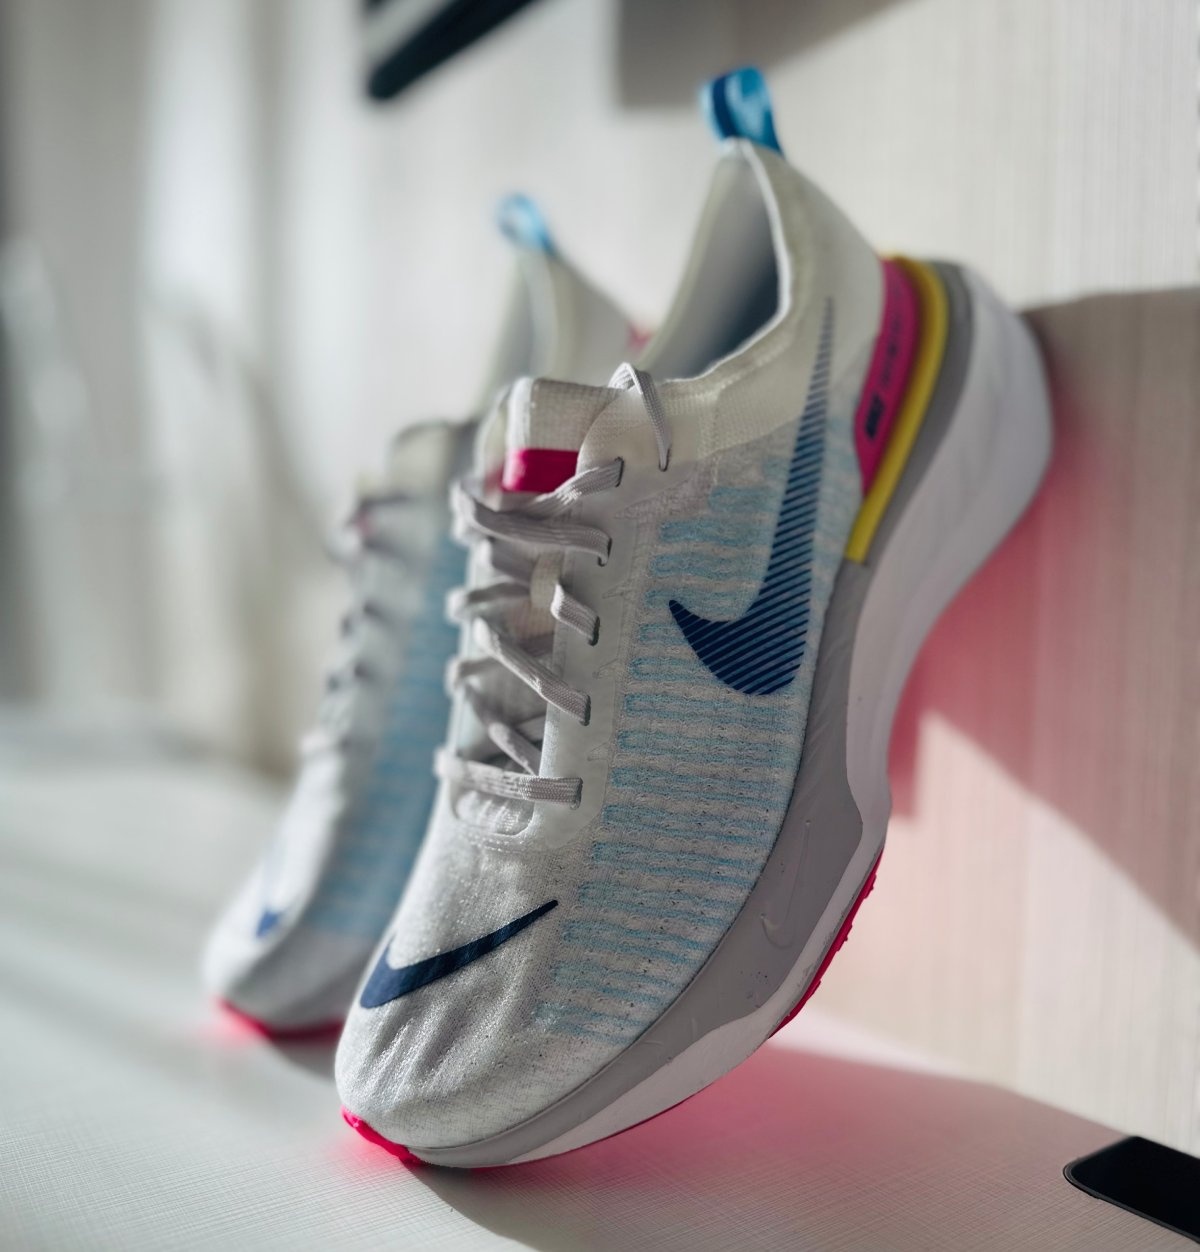 Nike alza la posta con le Invincible 3: nuovi colori per dominare il mercato dell'ammortizzazione